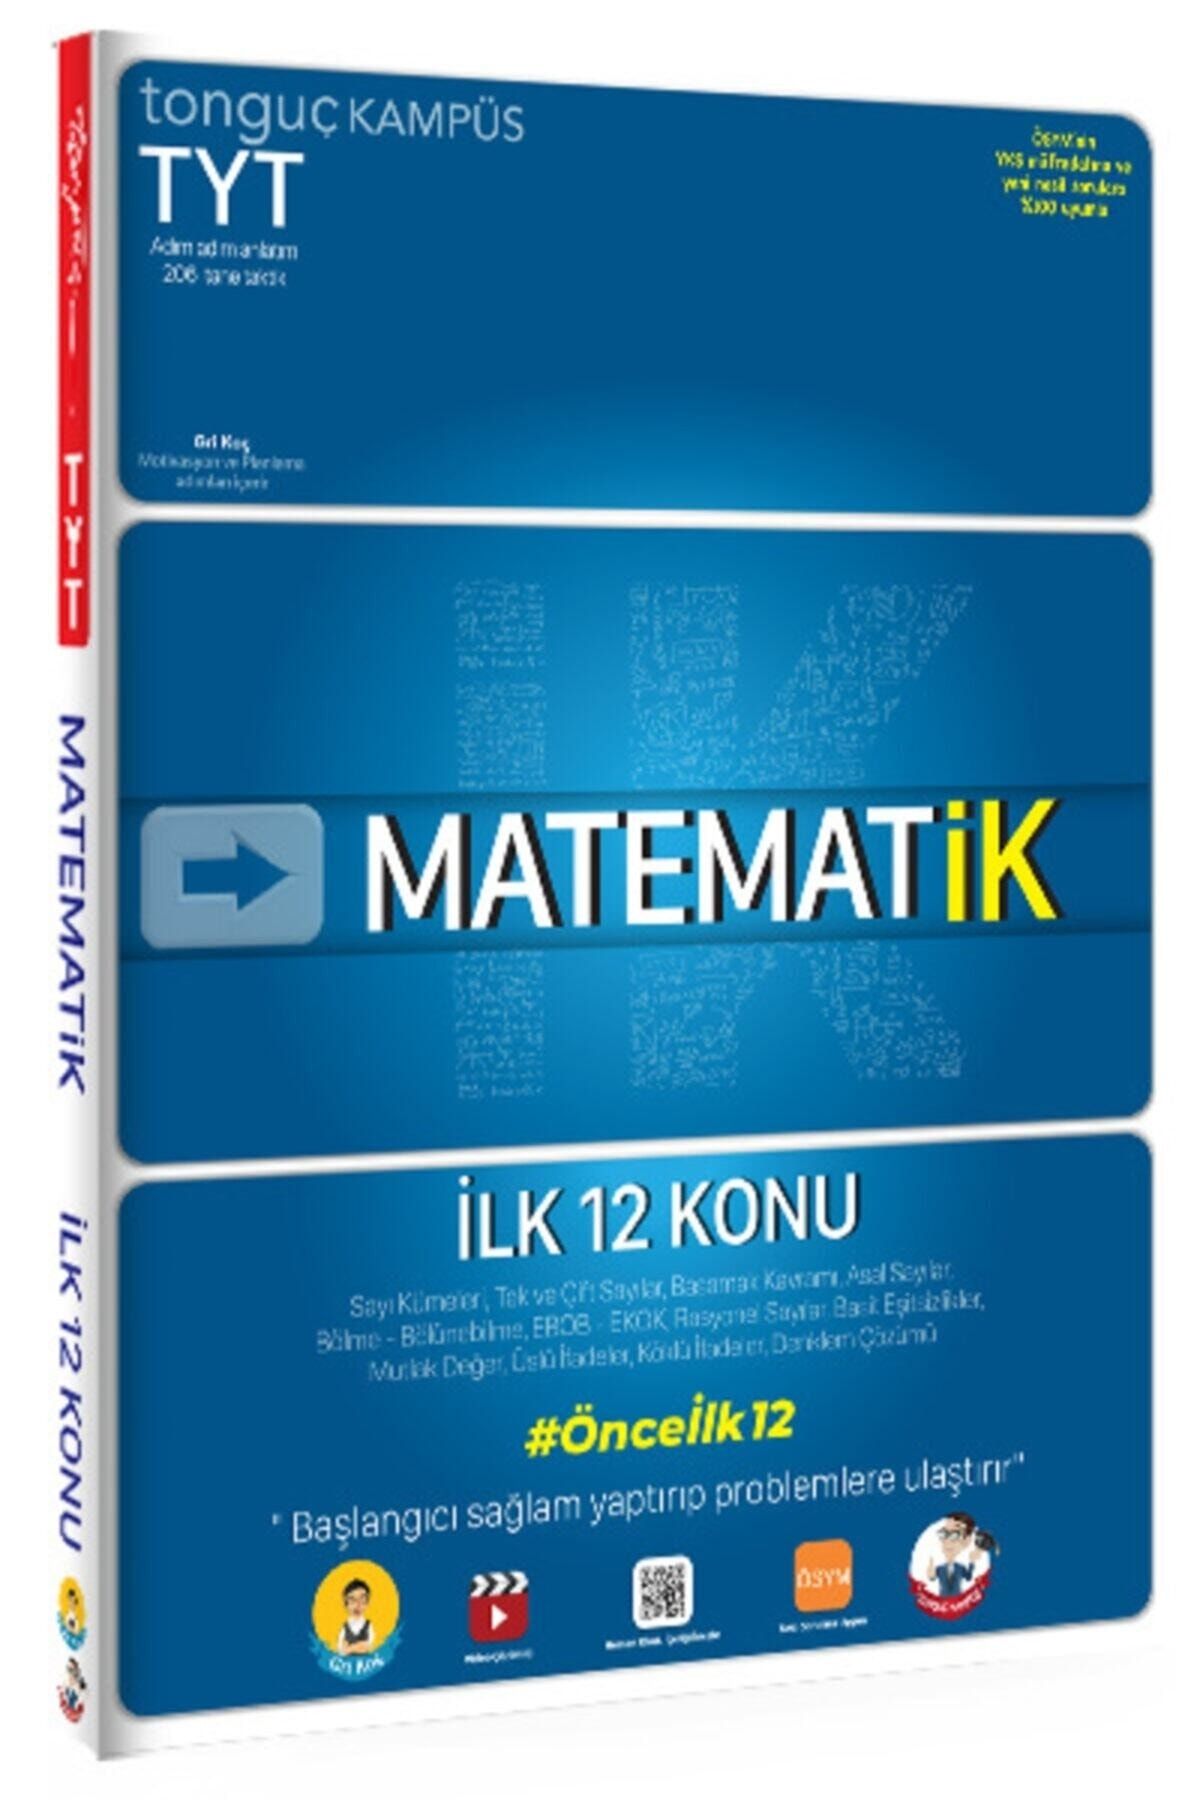 Tonguç Yayınları Tyt Matematik İlk 12 Konu Soru Bankası Kitabı 2021